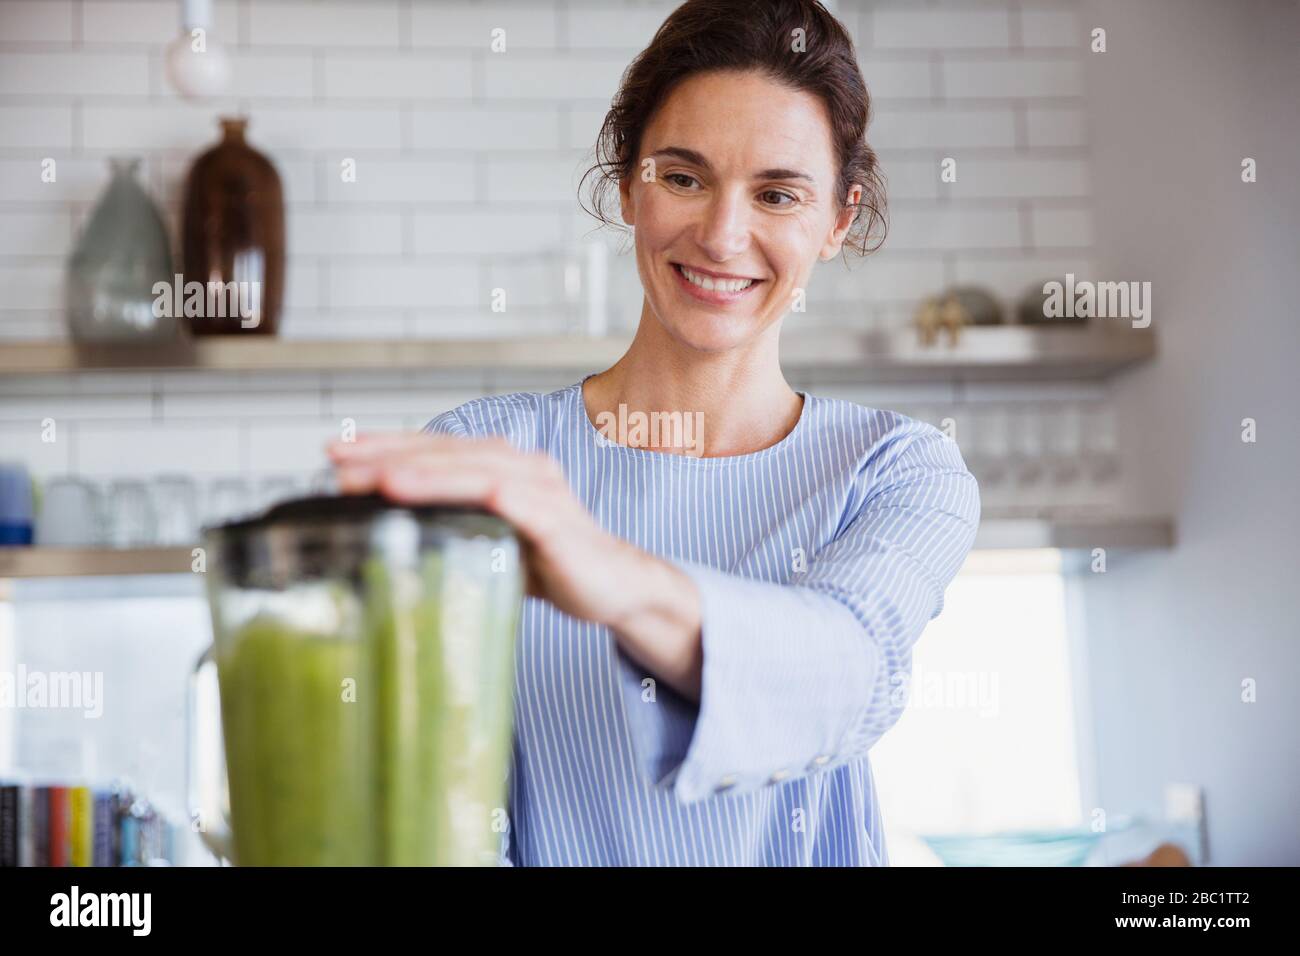 Lächelnde Frau, die in der Küche einen gesunden grünen Smoothie macht Stockfoto